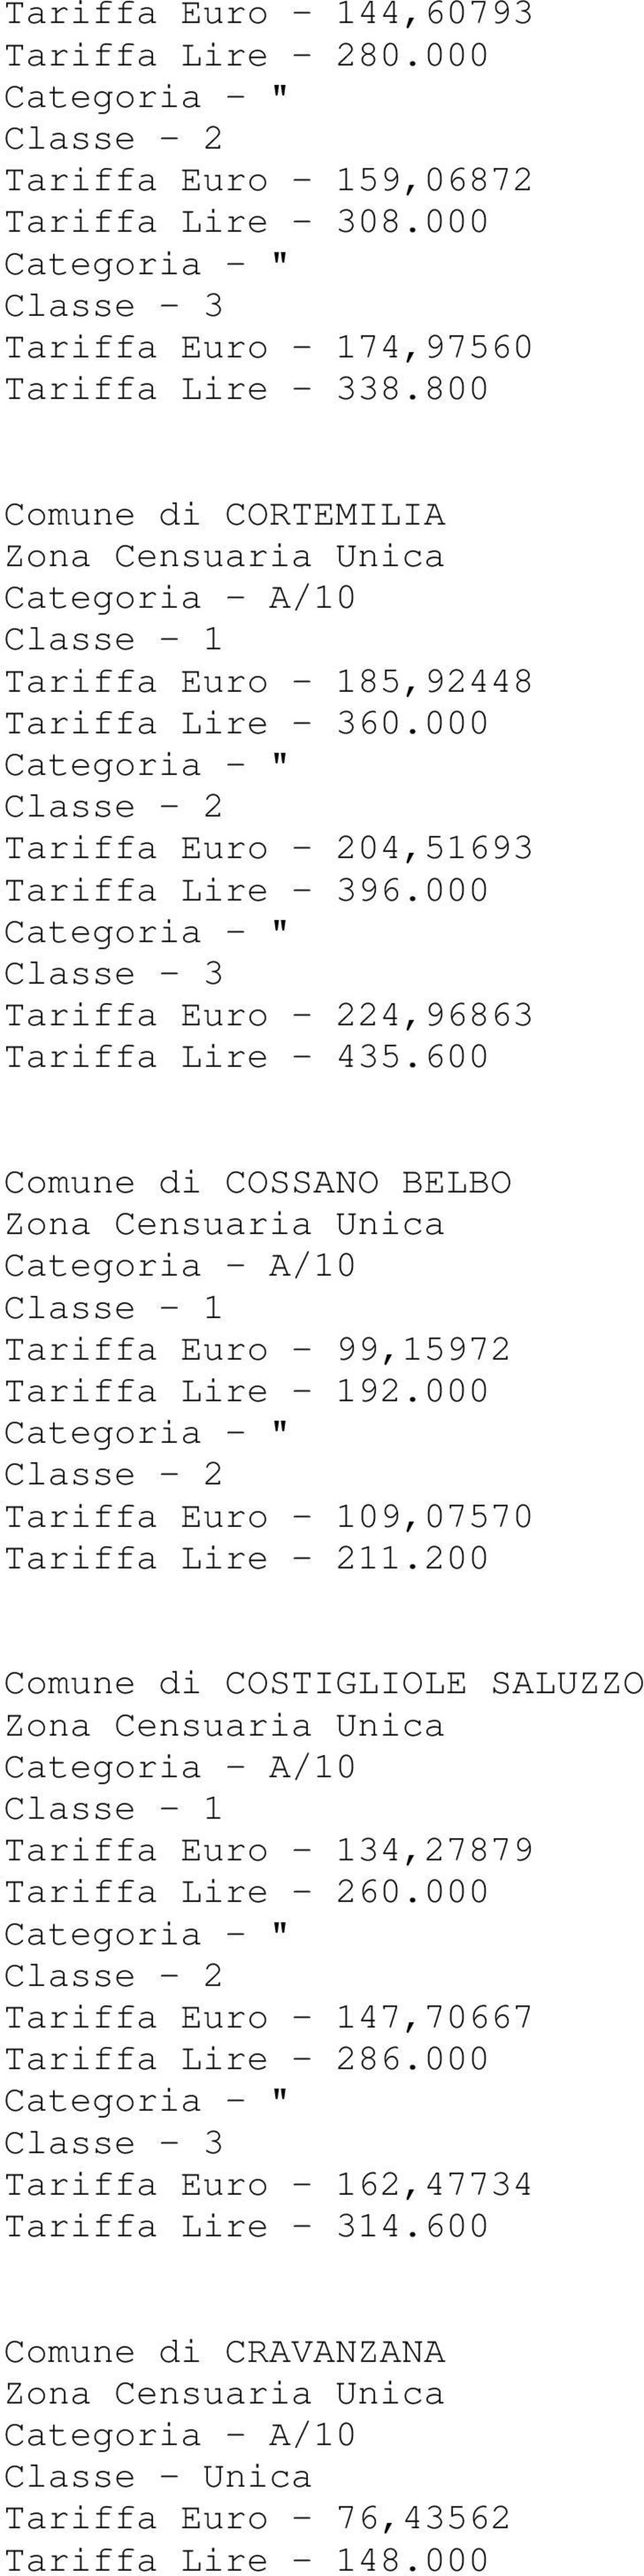 600 Comune di COSSANO BELBO Tariffa Euro - 99,15972 Tariffa Lire - 192.000 Tariffa Euro - 109,07570 Tariffa Lire - 211.